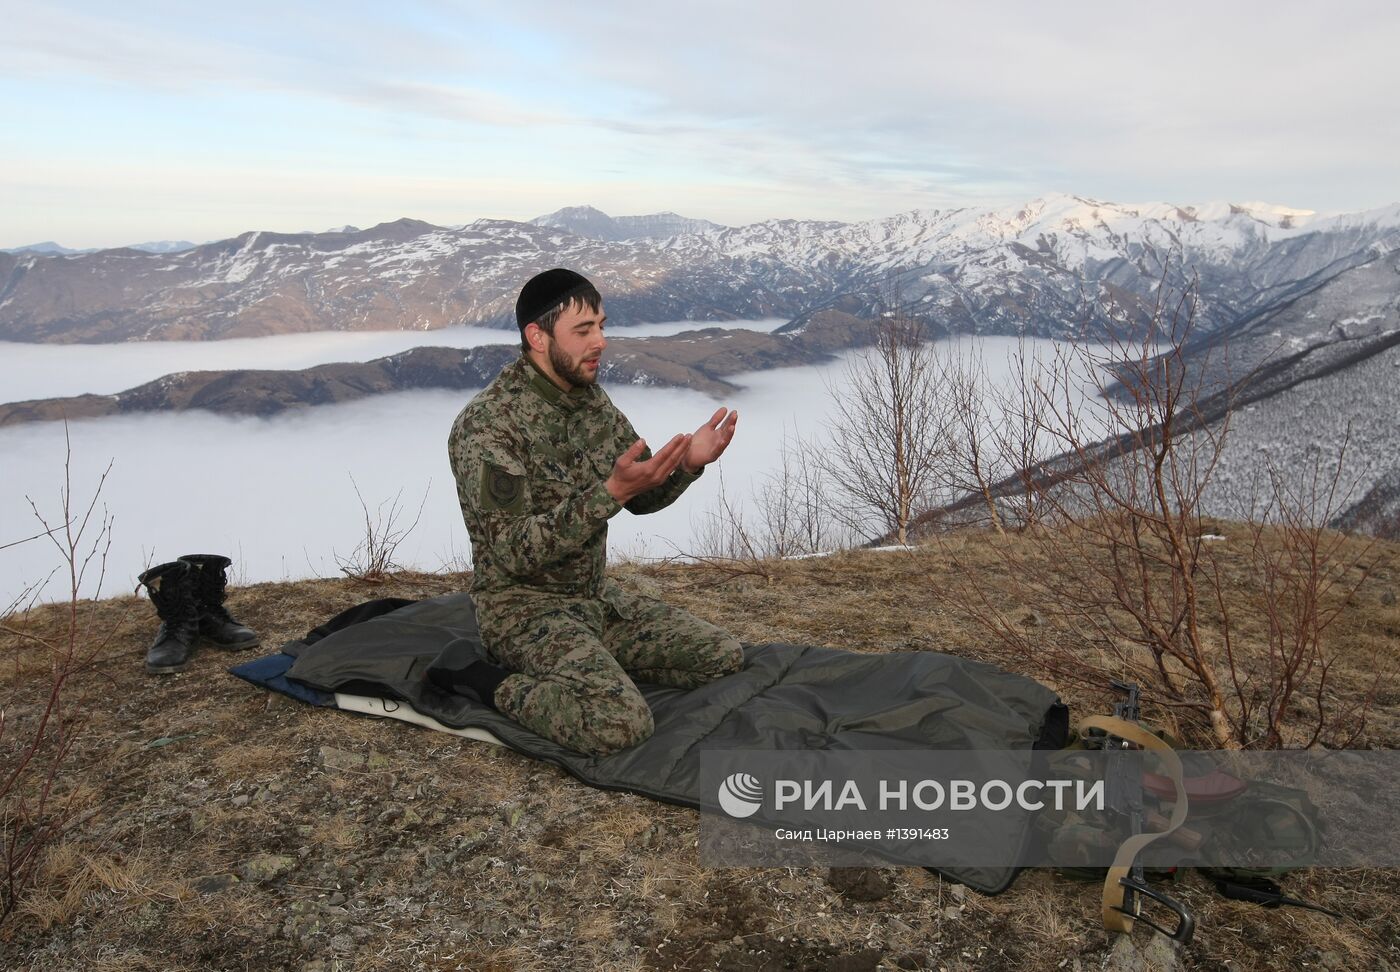 Презентация горнолыжного курорта "Ведучи" в Чеченской Республике